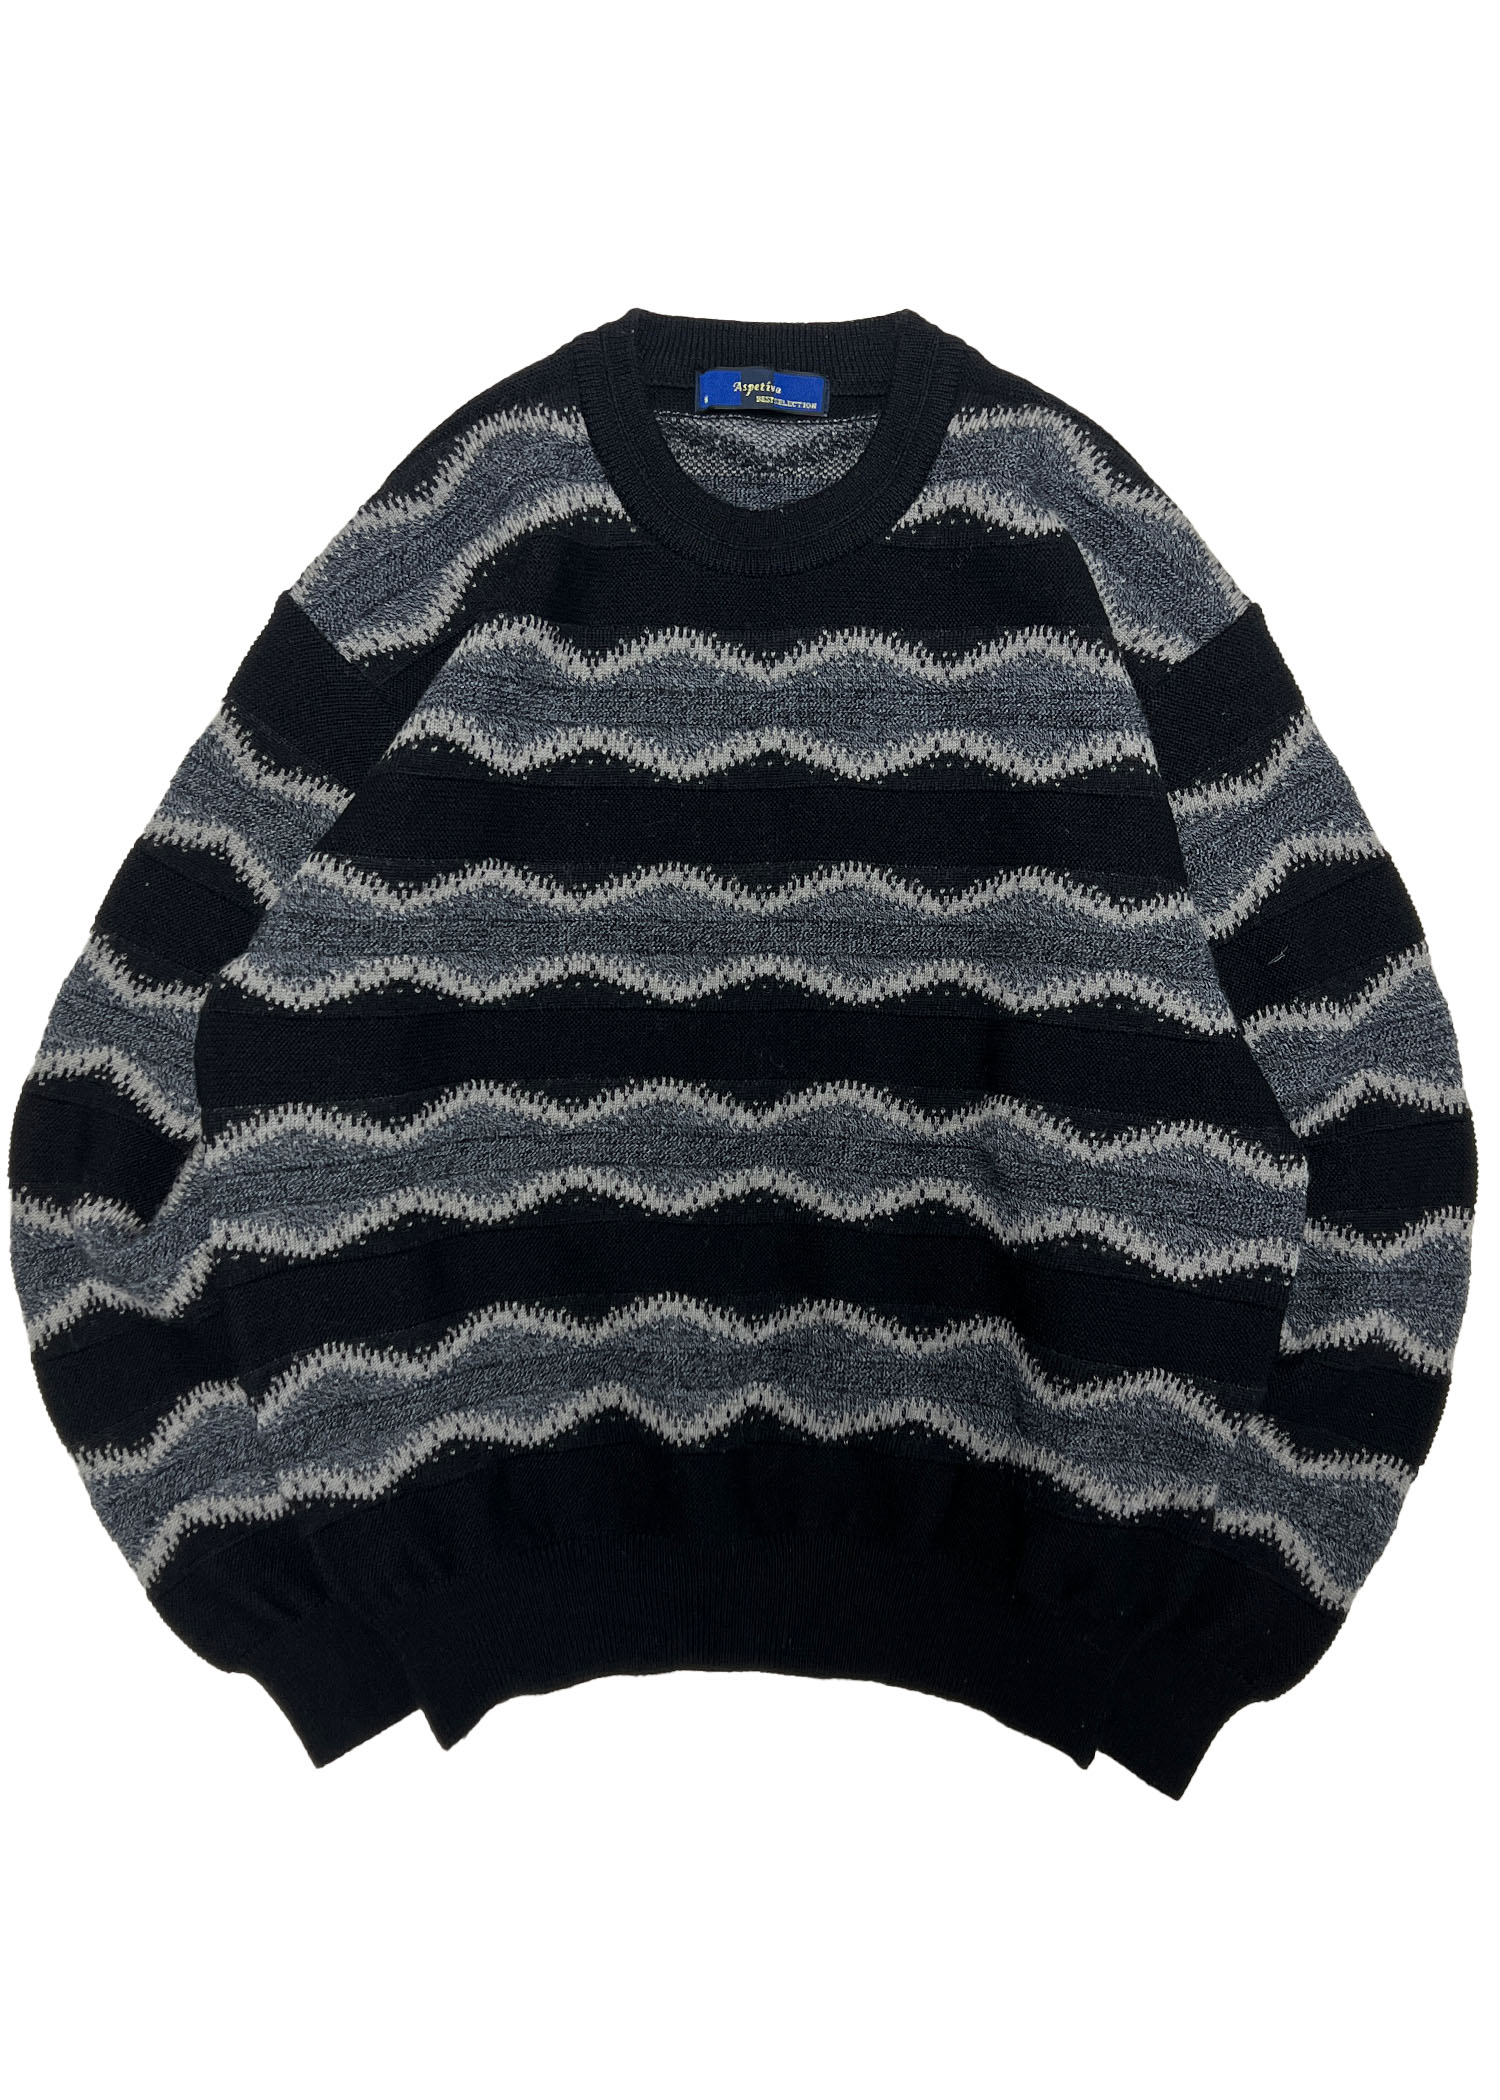 select vintage : pattern knit